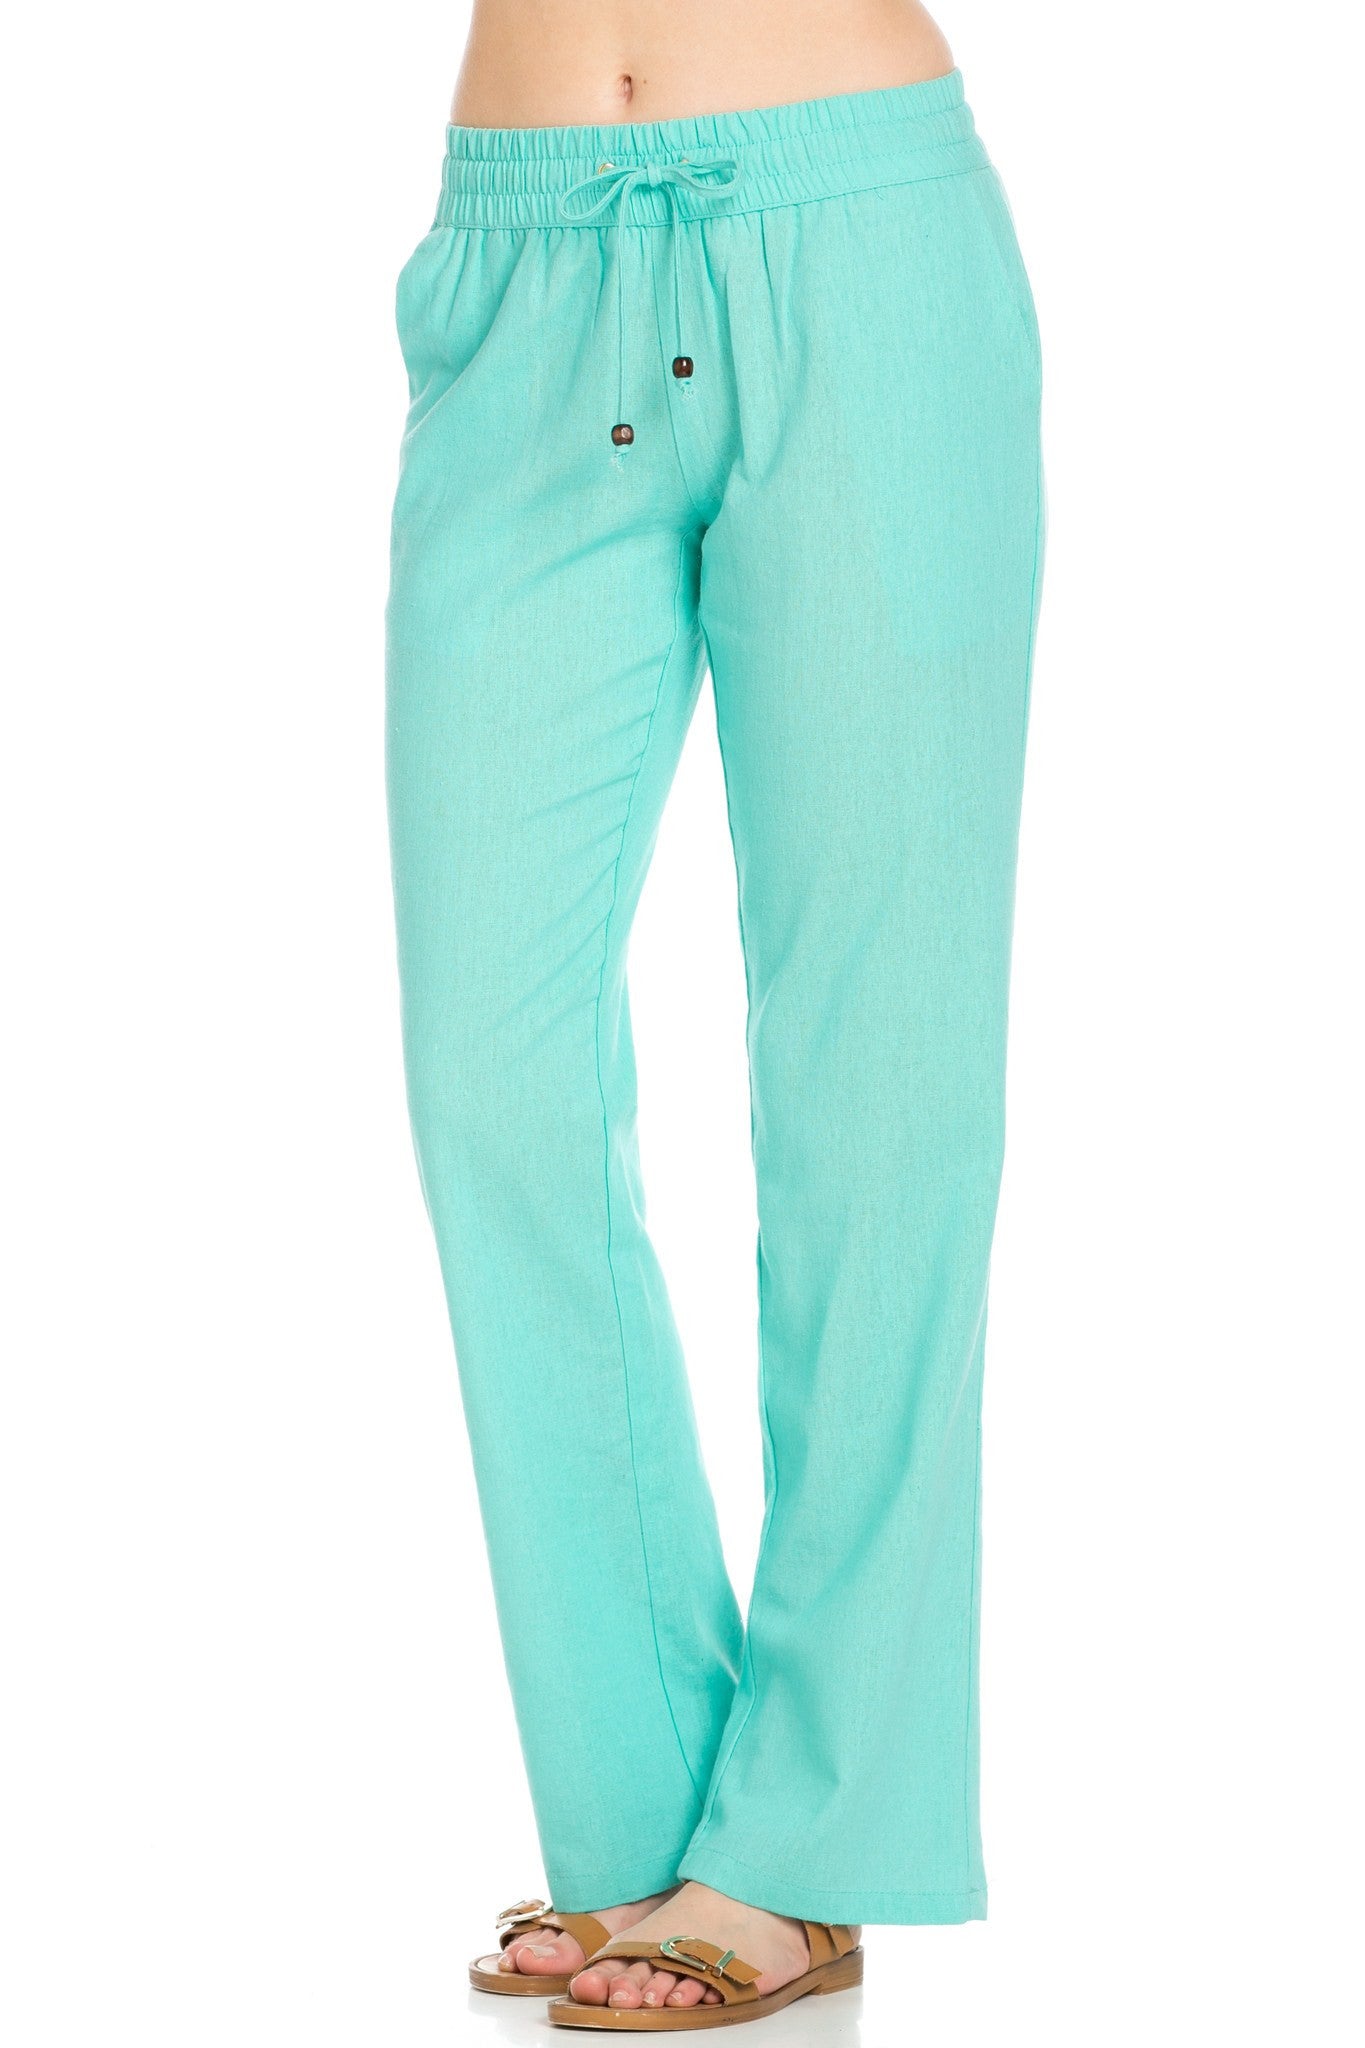 Roxy Ocean Side - Mint Green Lounge Pants - Linen Pants - $39.50 - Lulus